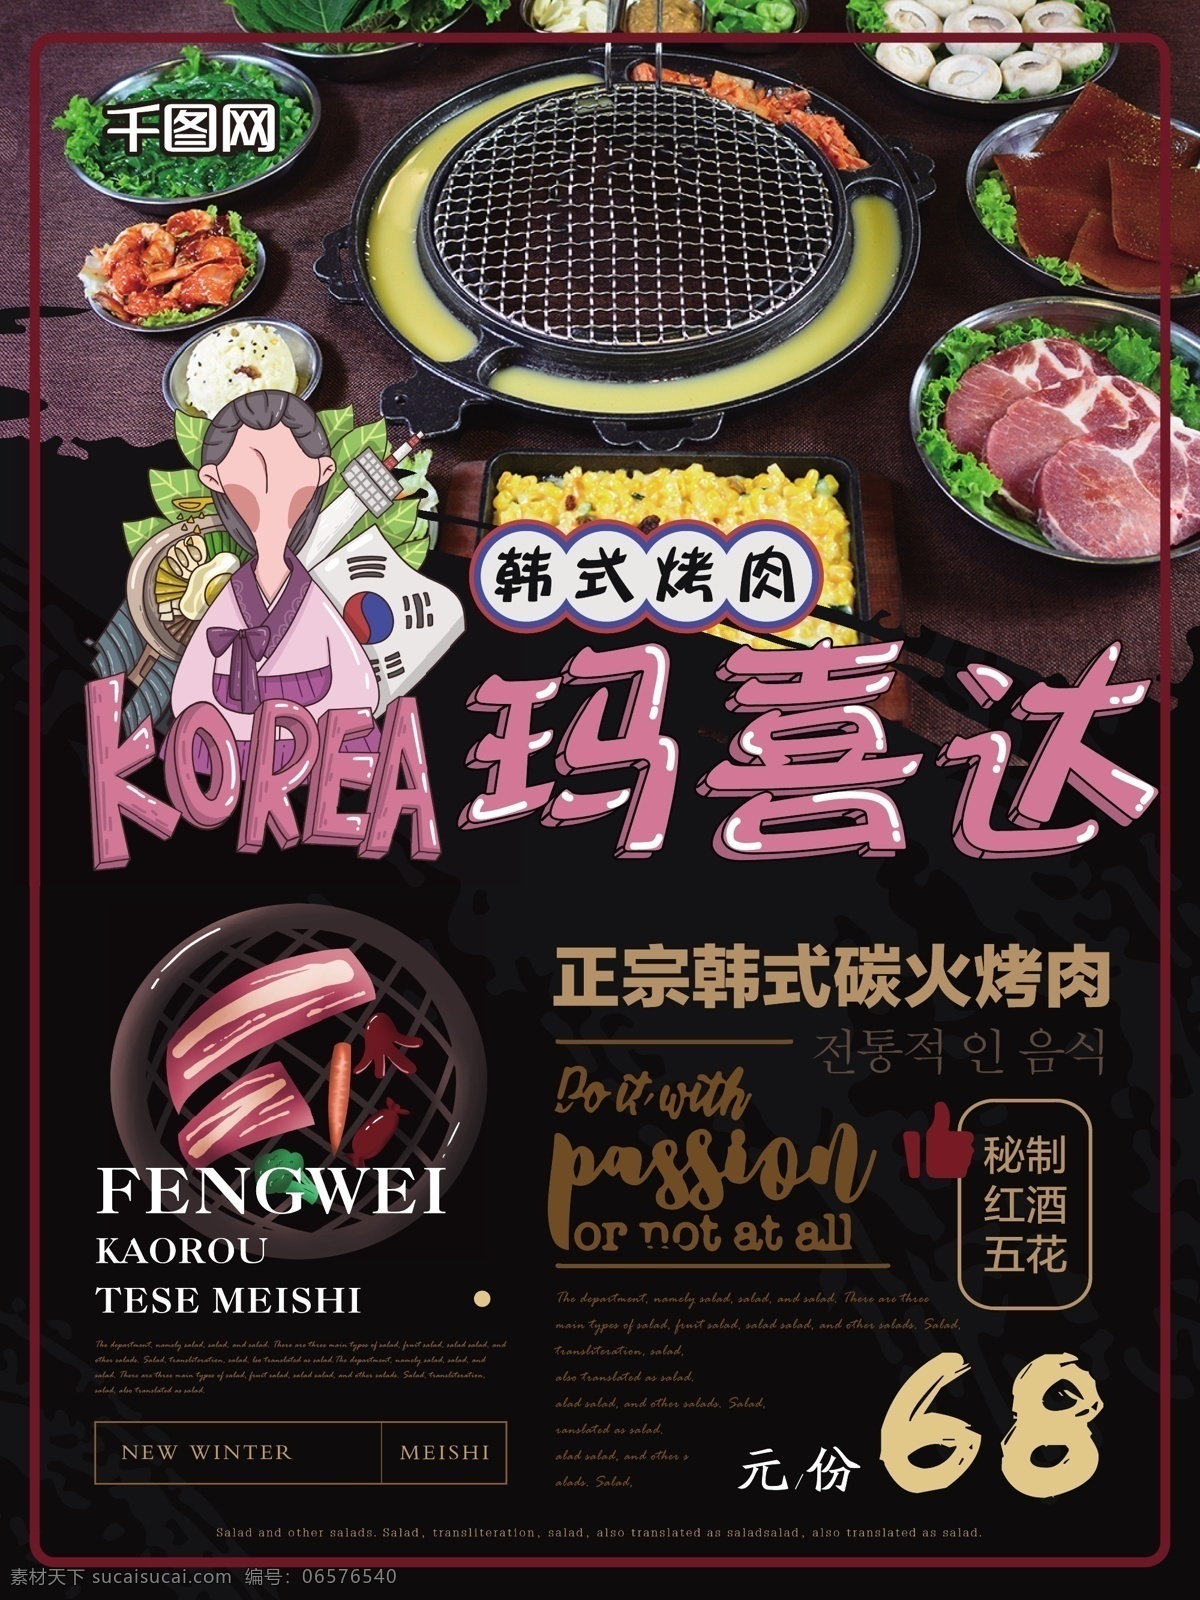 简约 创意 插画 韩式 烤肉 美食 海报 简约风 插画风 韩式烤肉 健康 美味